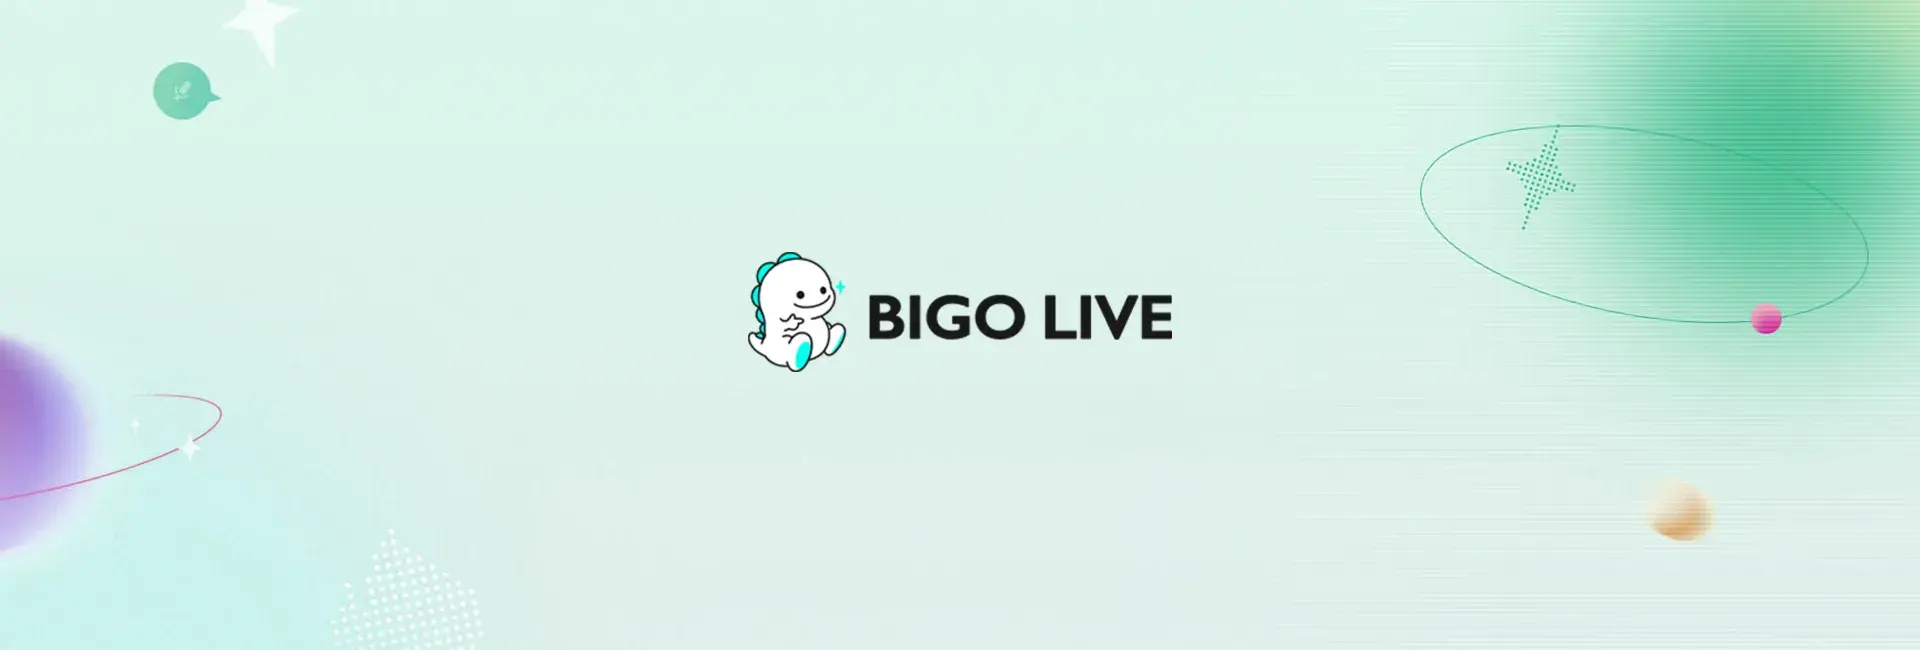 Bigo Live - 471 Diamonds (Global)	